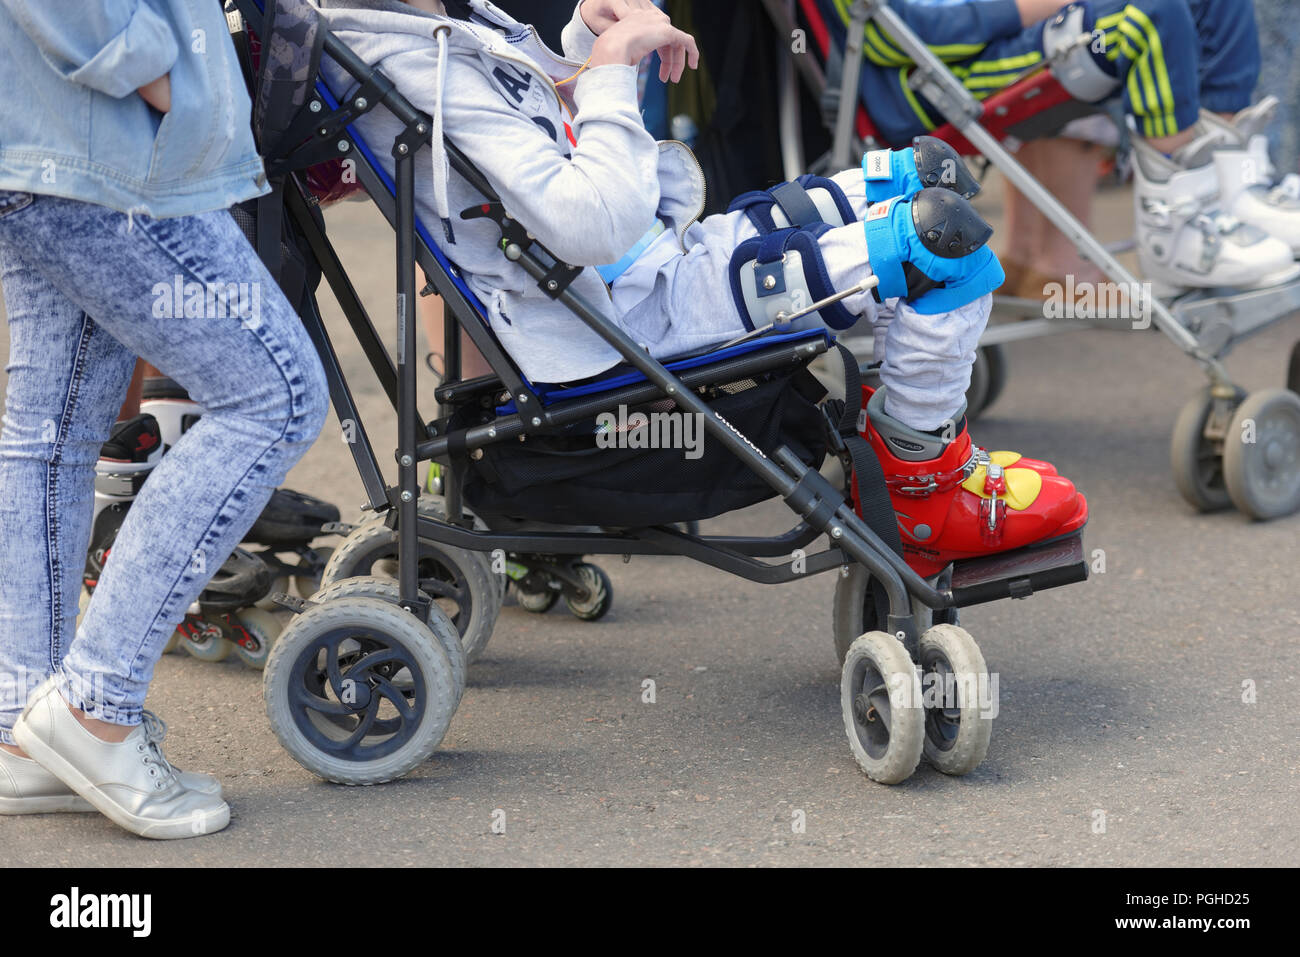 St. Petersburg, Russland - 30. Mai 2018: Behinderte Kinder vor den Wettkämpfen startet der Träume. Rollen. 32 behinderte Kinder von 12 Regionen o Stockfoto